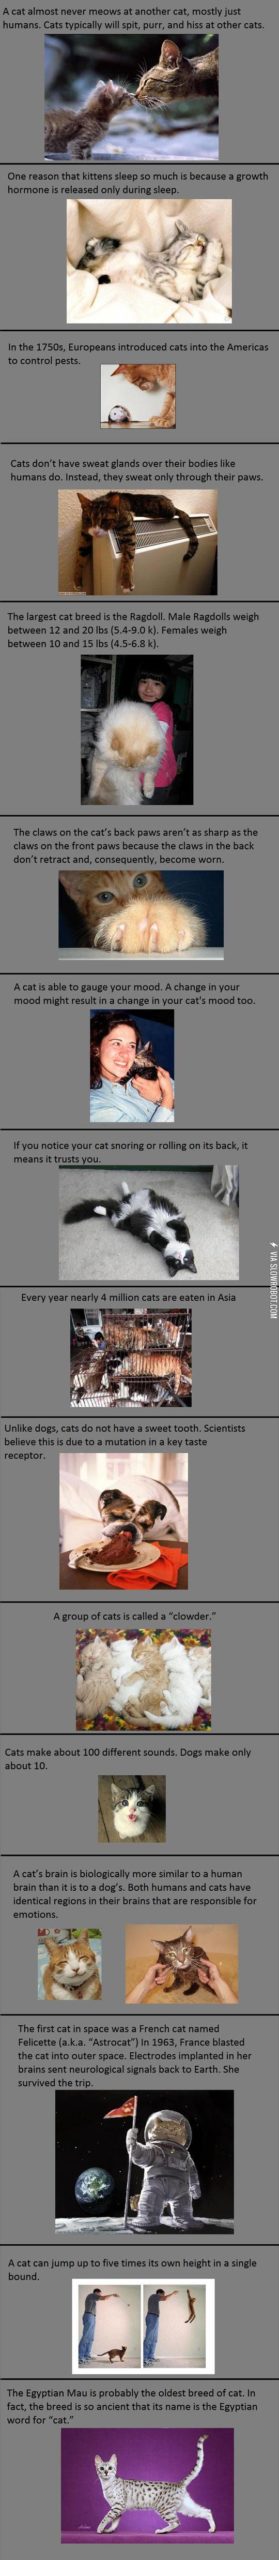 Cat+Facts